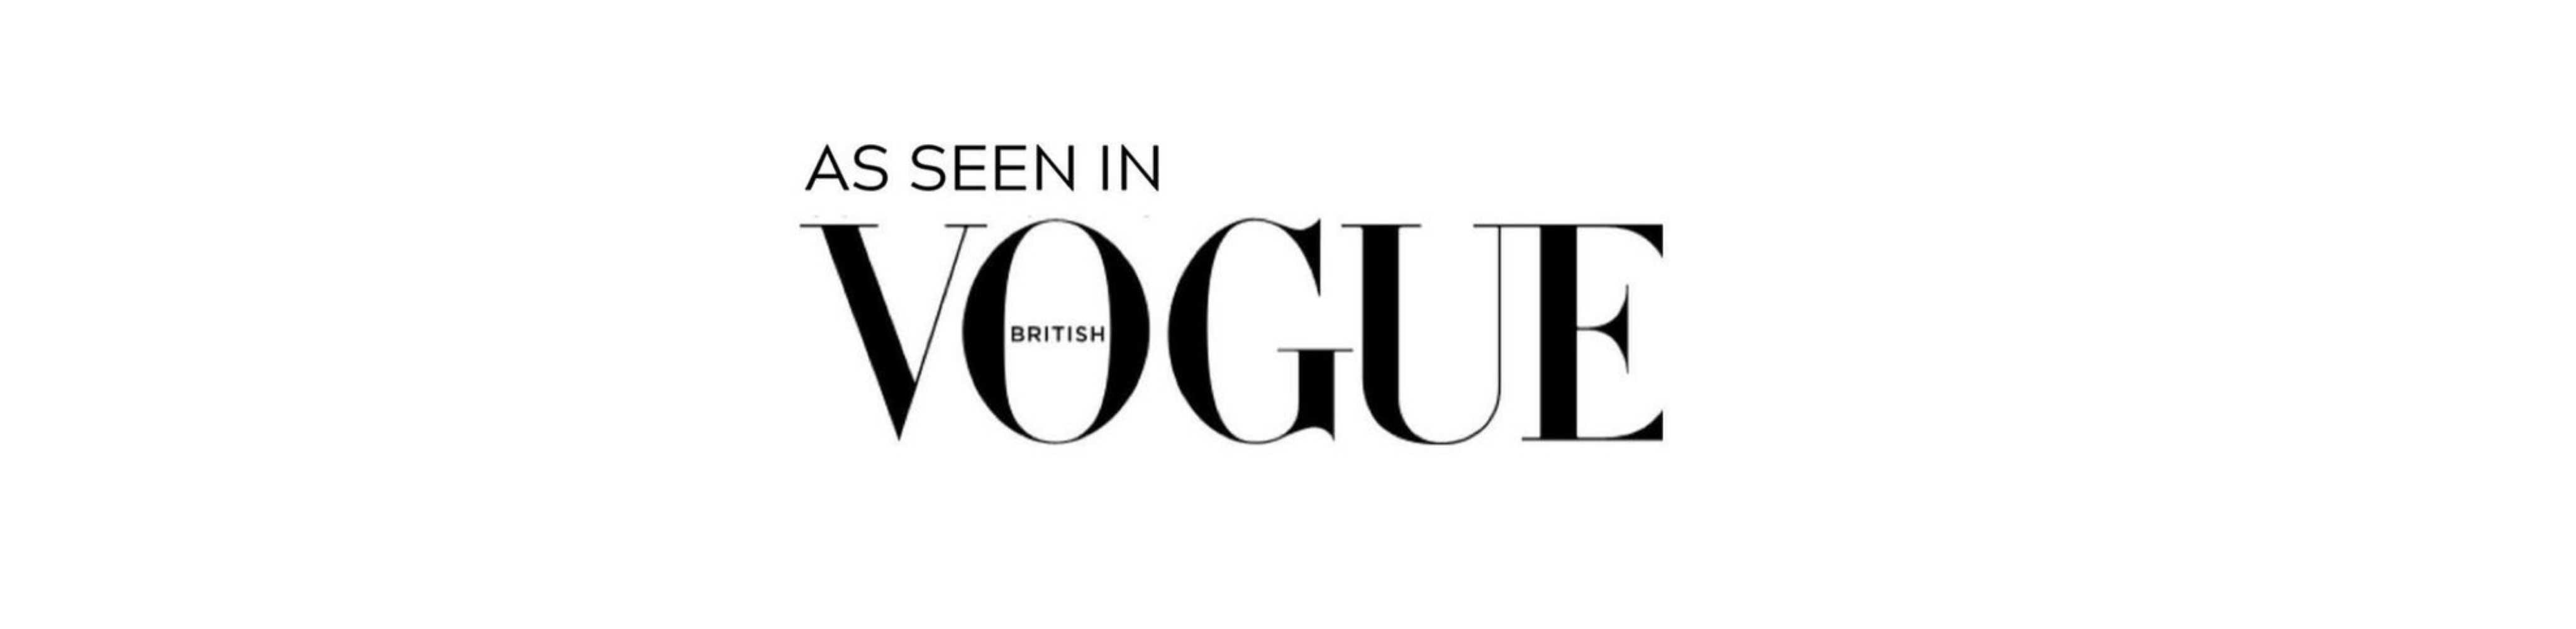 Ben & Ellie Baby Nappy Change Clutch as Seen in Vogue Magazine